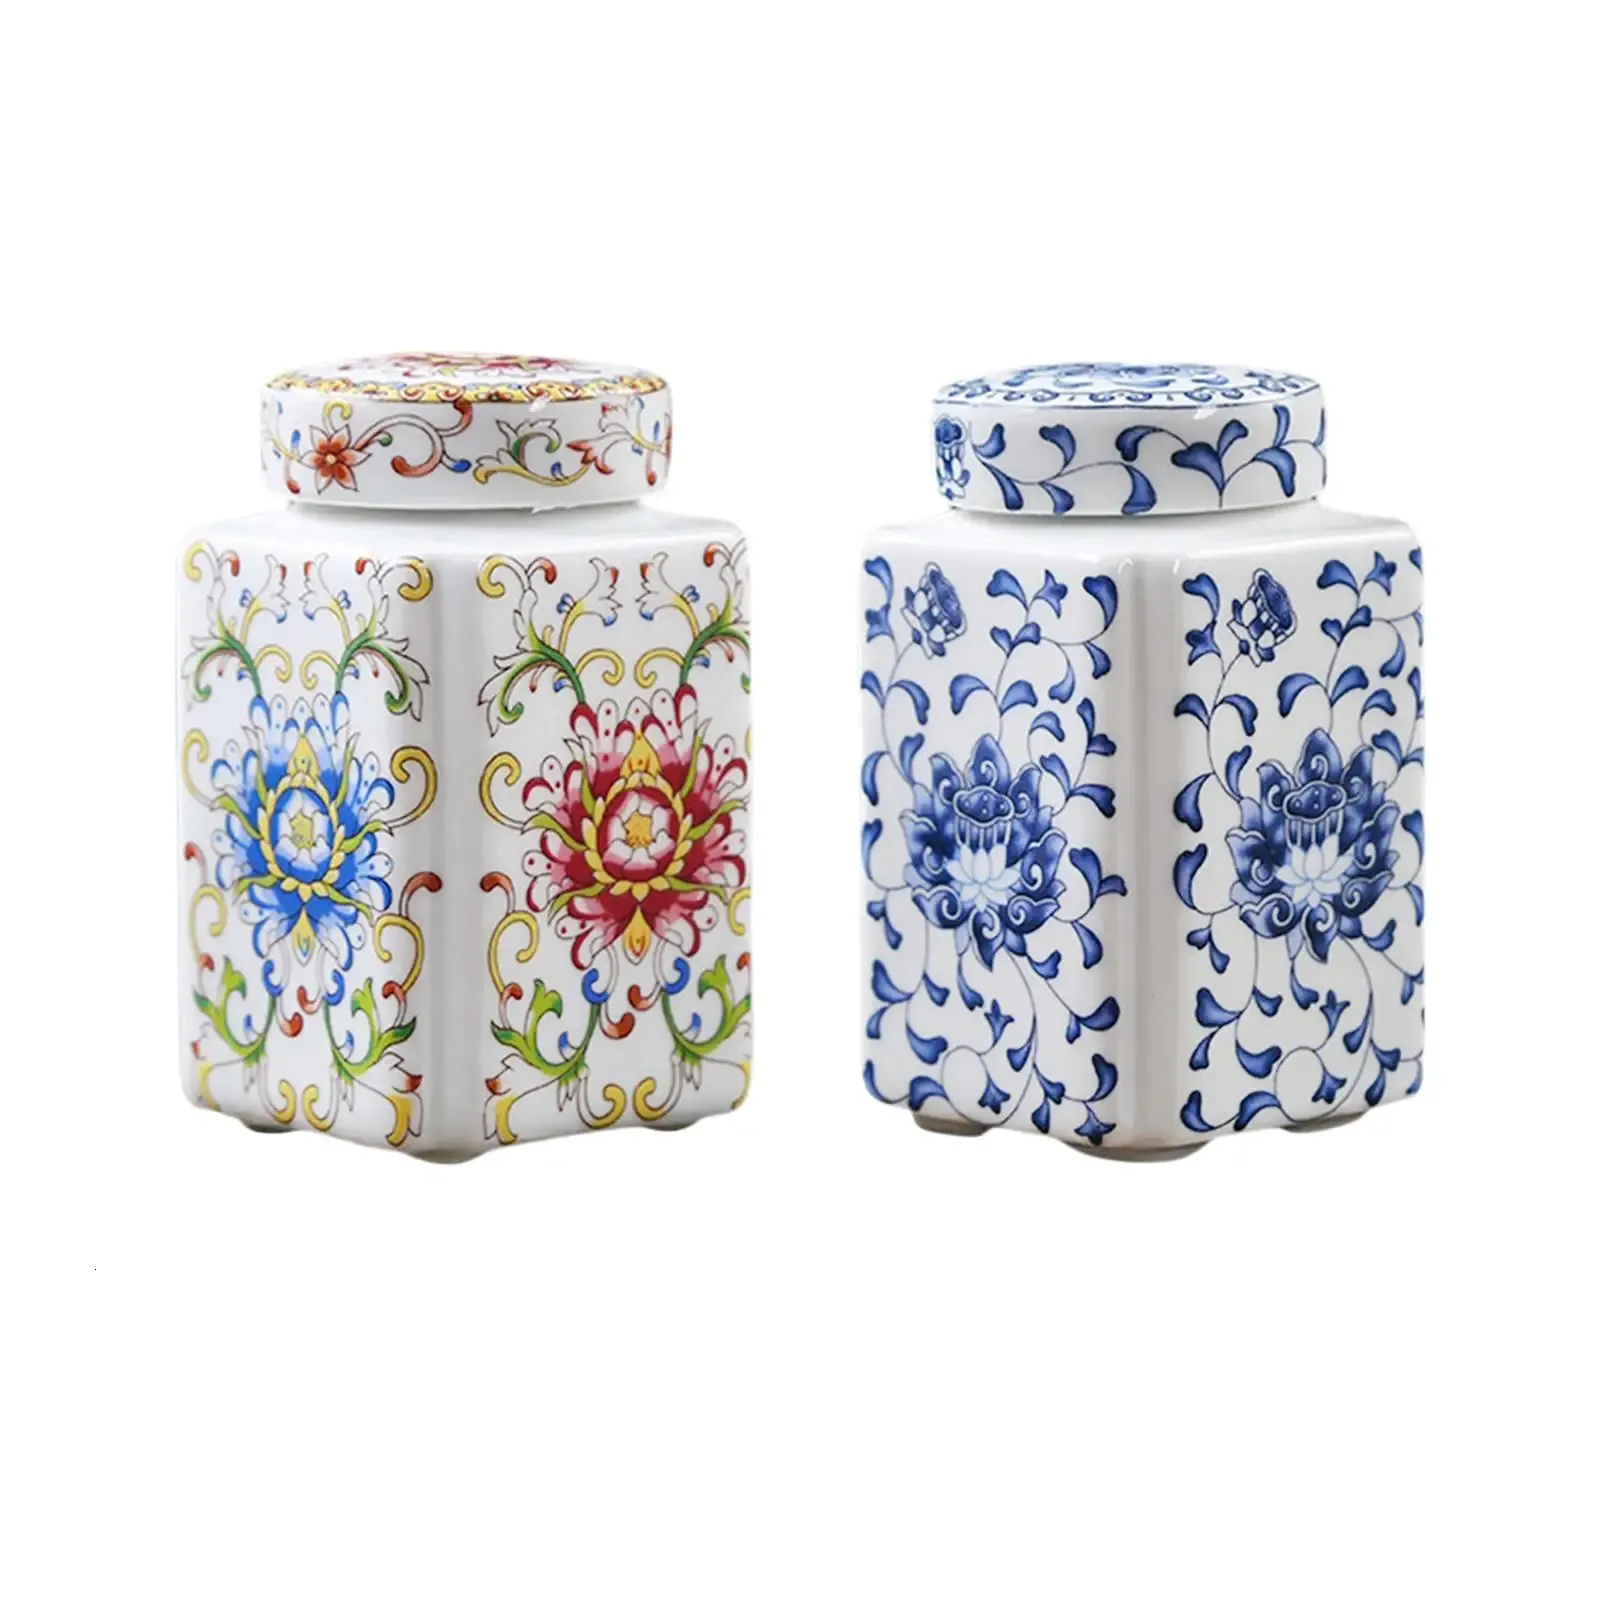 Ceramic Ginger Jar Decorative Ceramic Flower Vase Chinese Porcelain Temple Jar for Home Living Room Table Bedroom Decoration